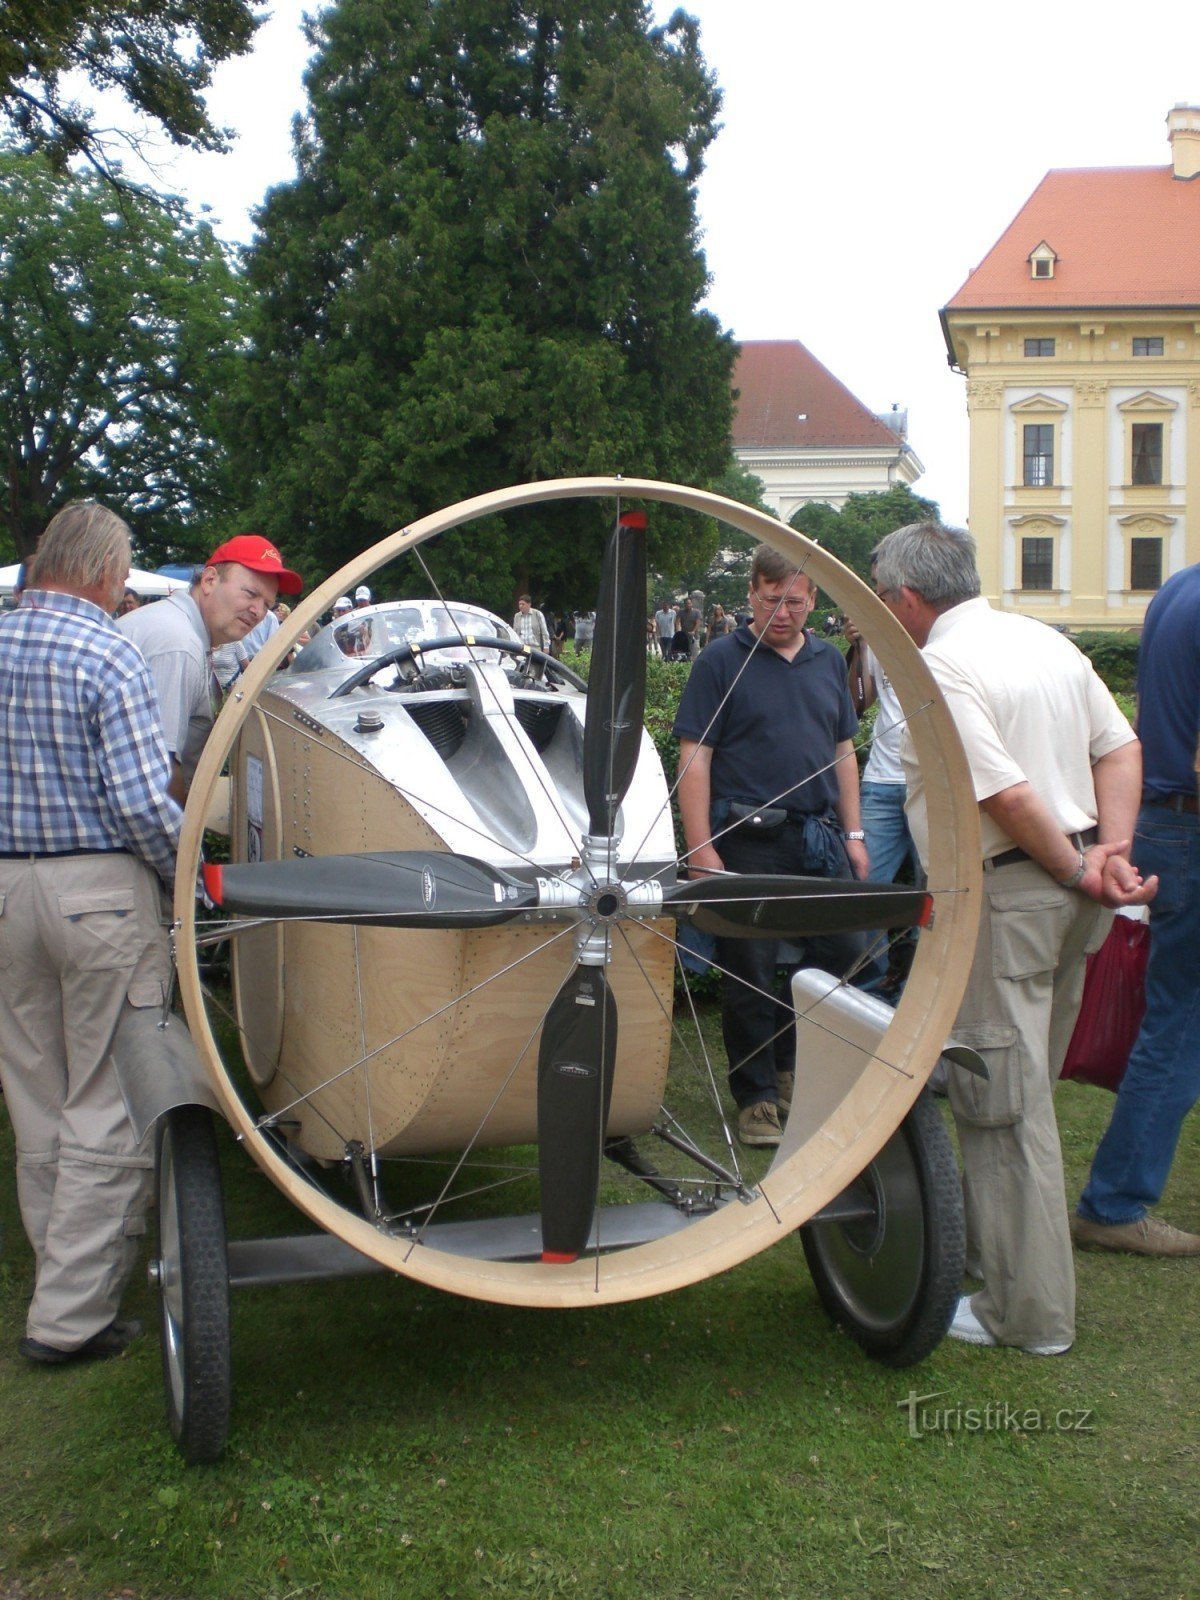 Lễ hội người già Slavkov gần Brno